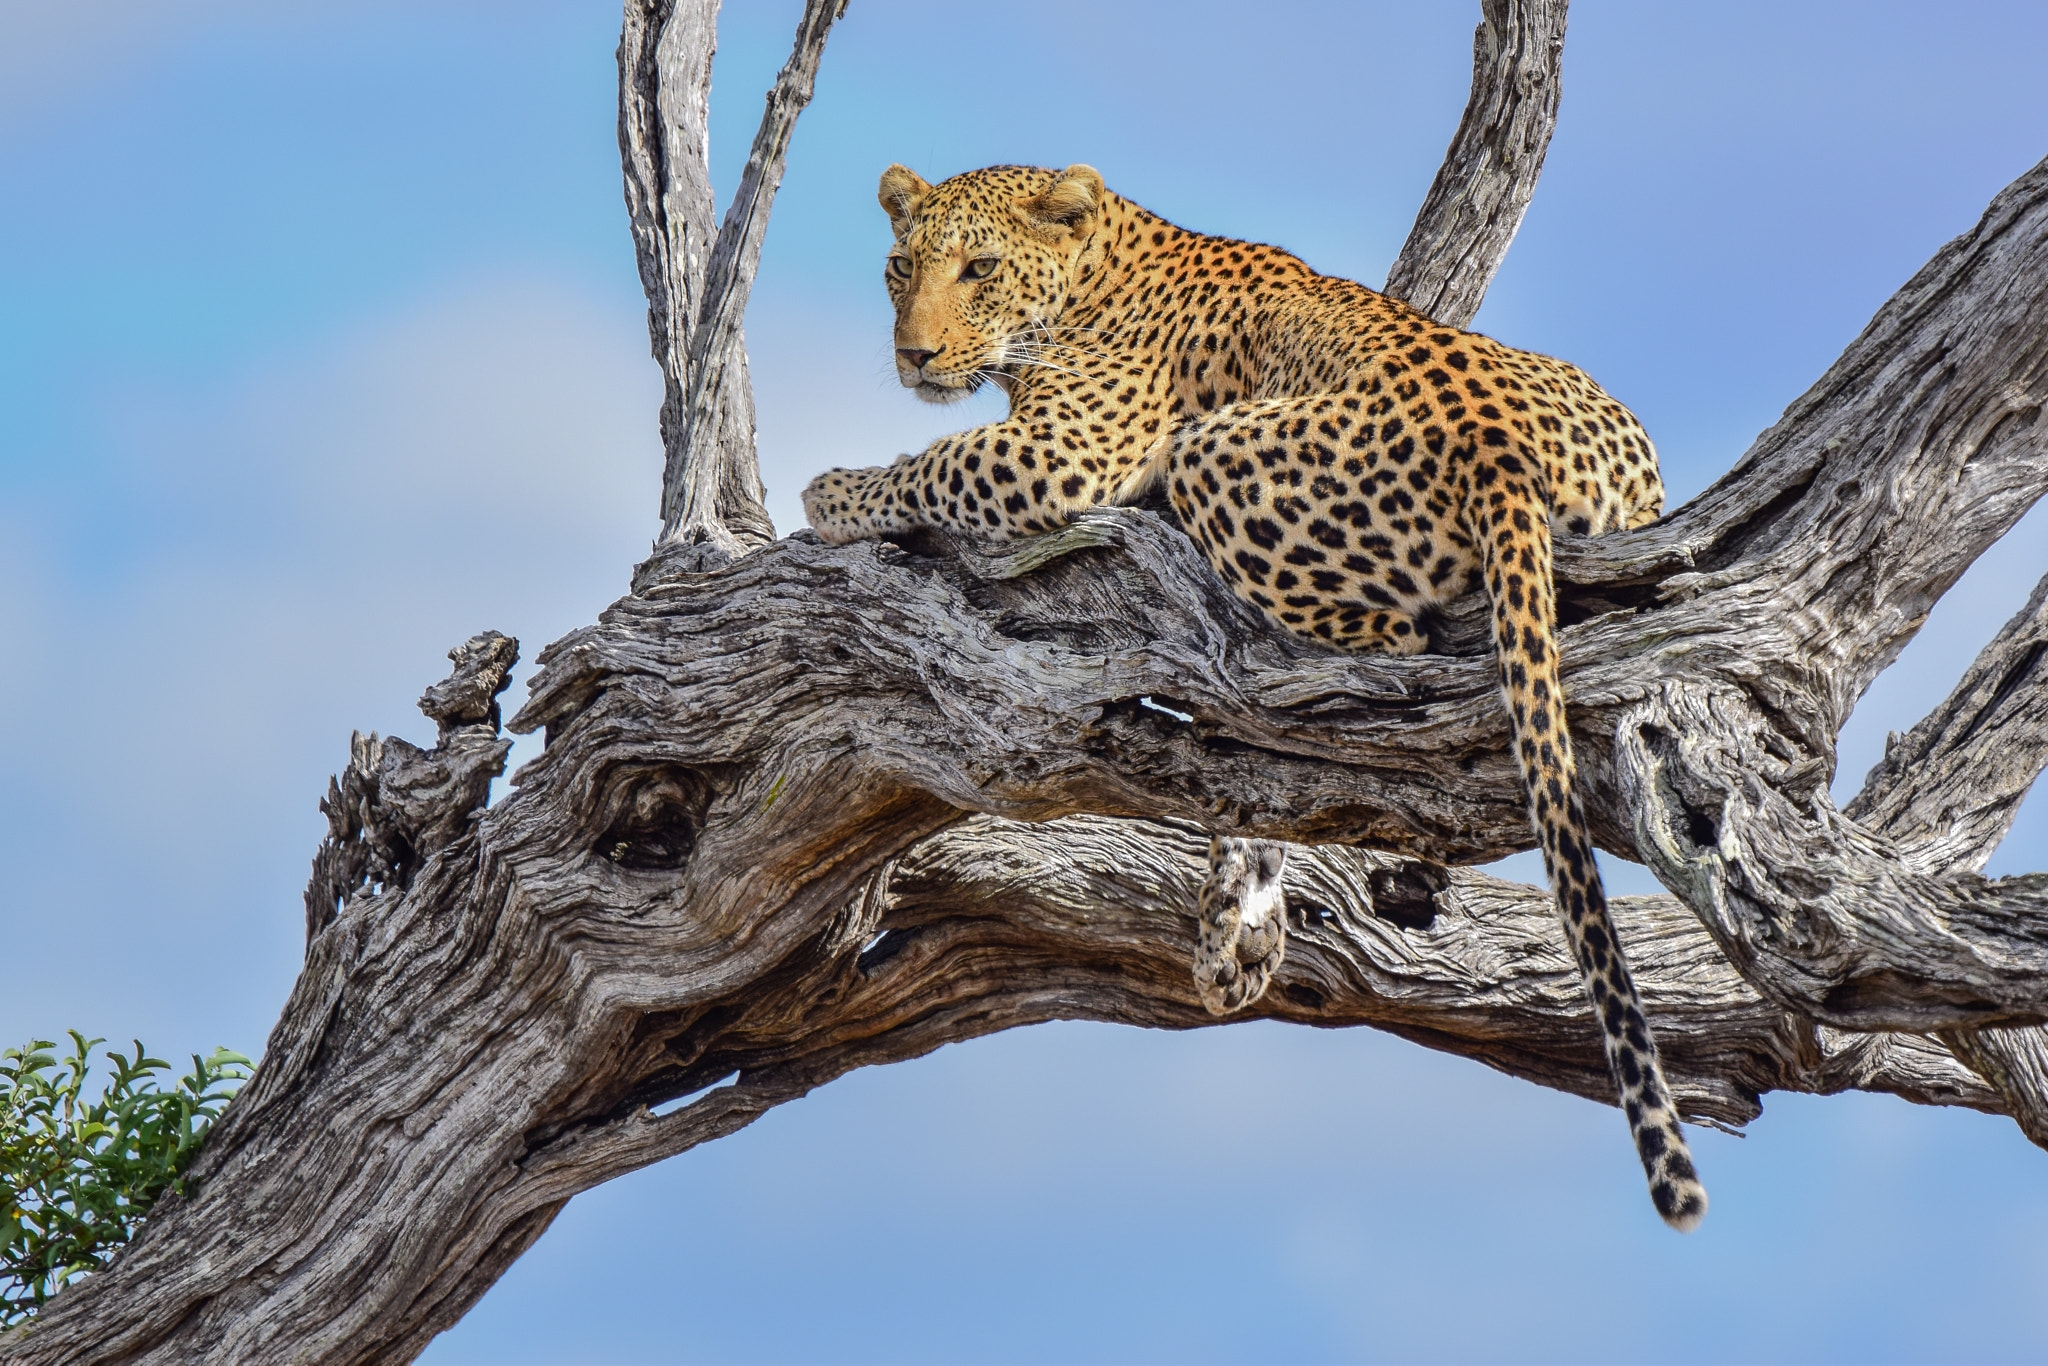 Обои Leopard in tree высохшее дерево хвост на рабочий стол